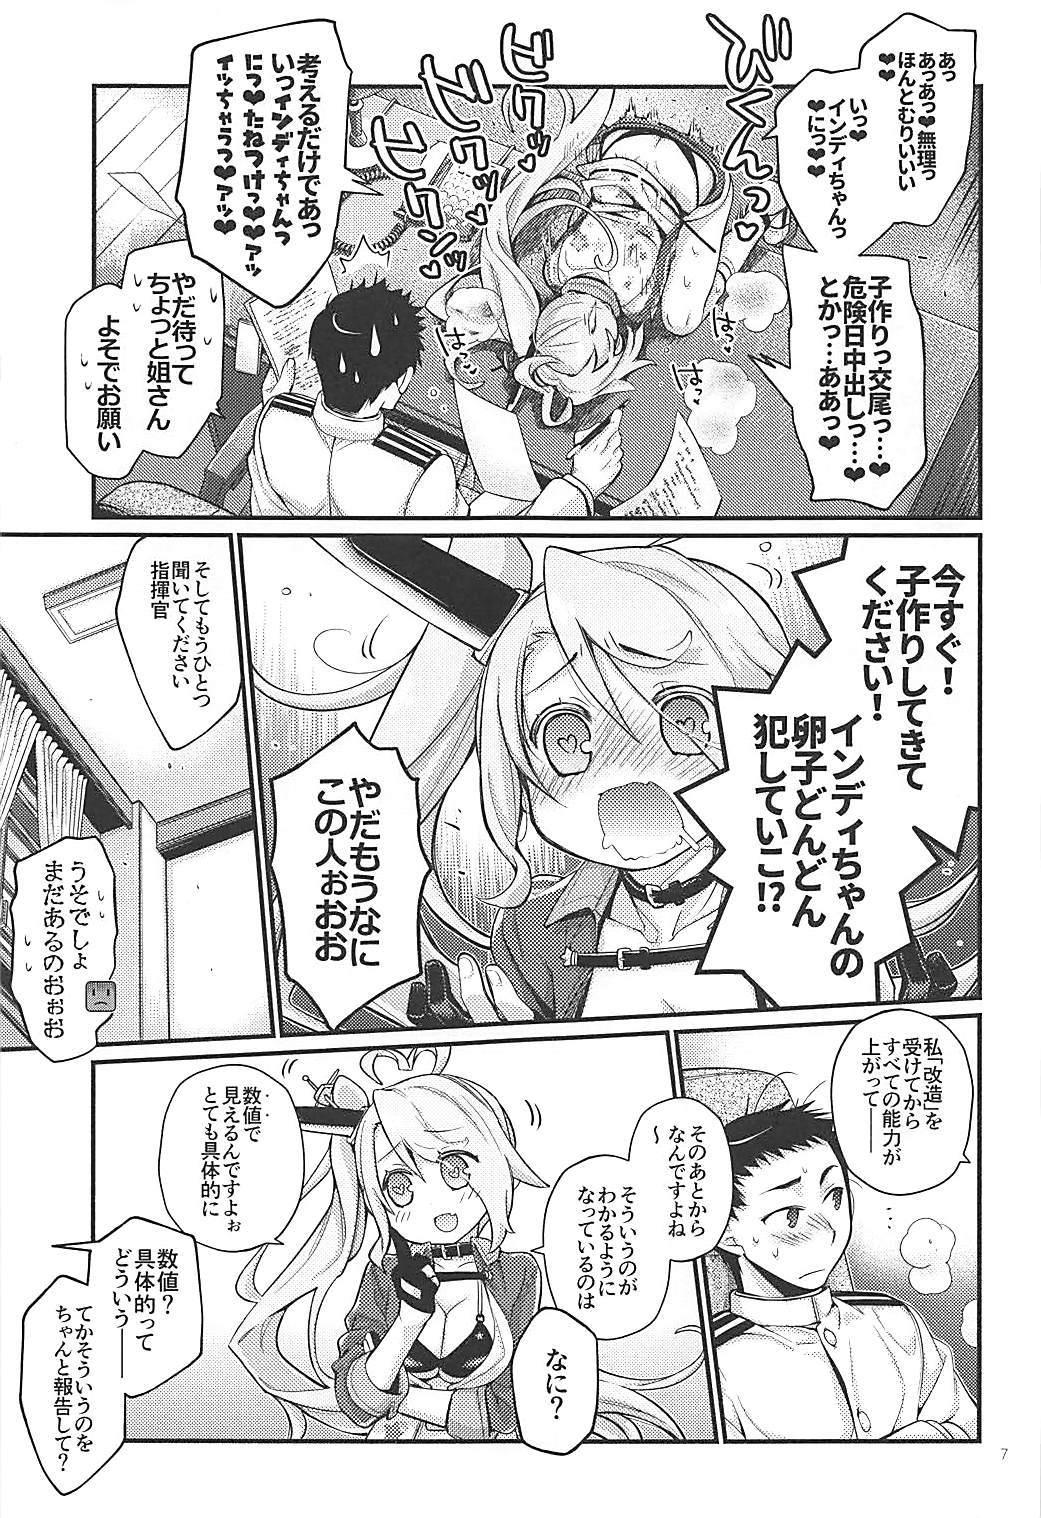 Funny Uchi no Imouto wa Sekaiichi Kawaiin desu kedo! 2 - Azur lane Futa - Page 6